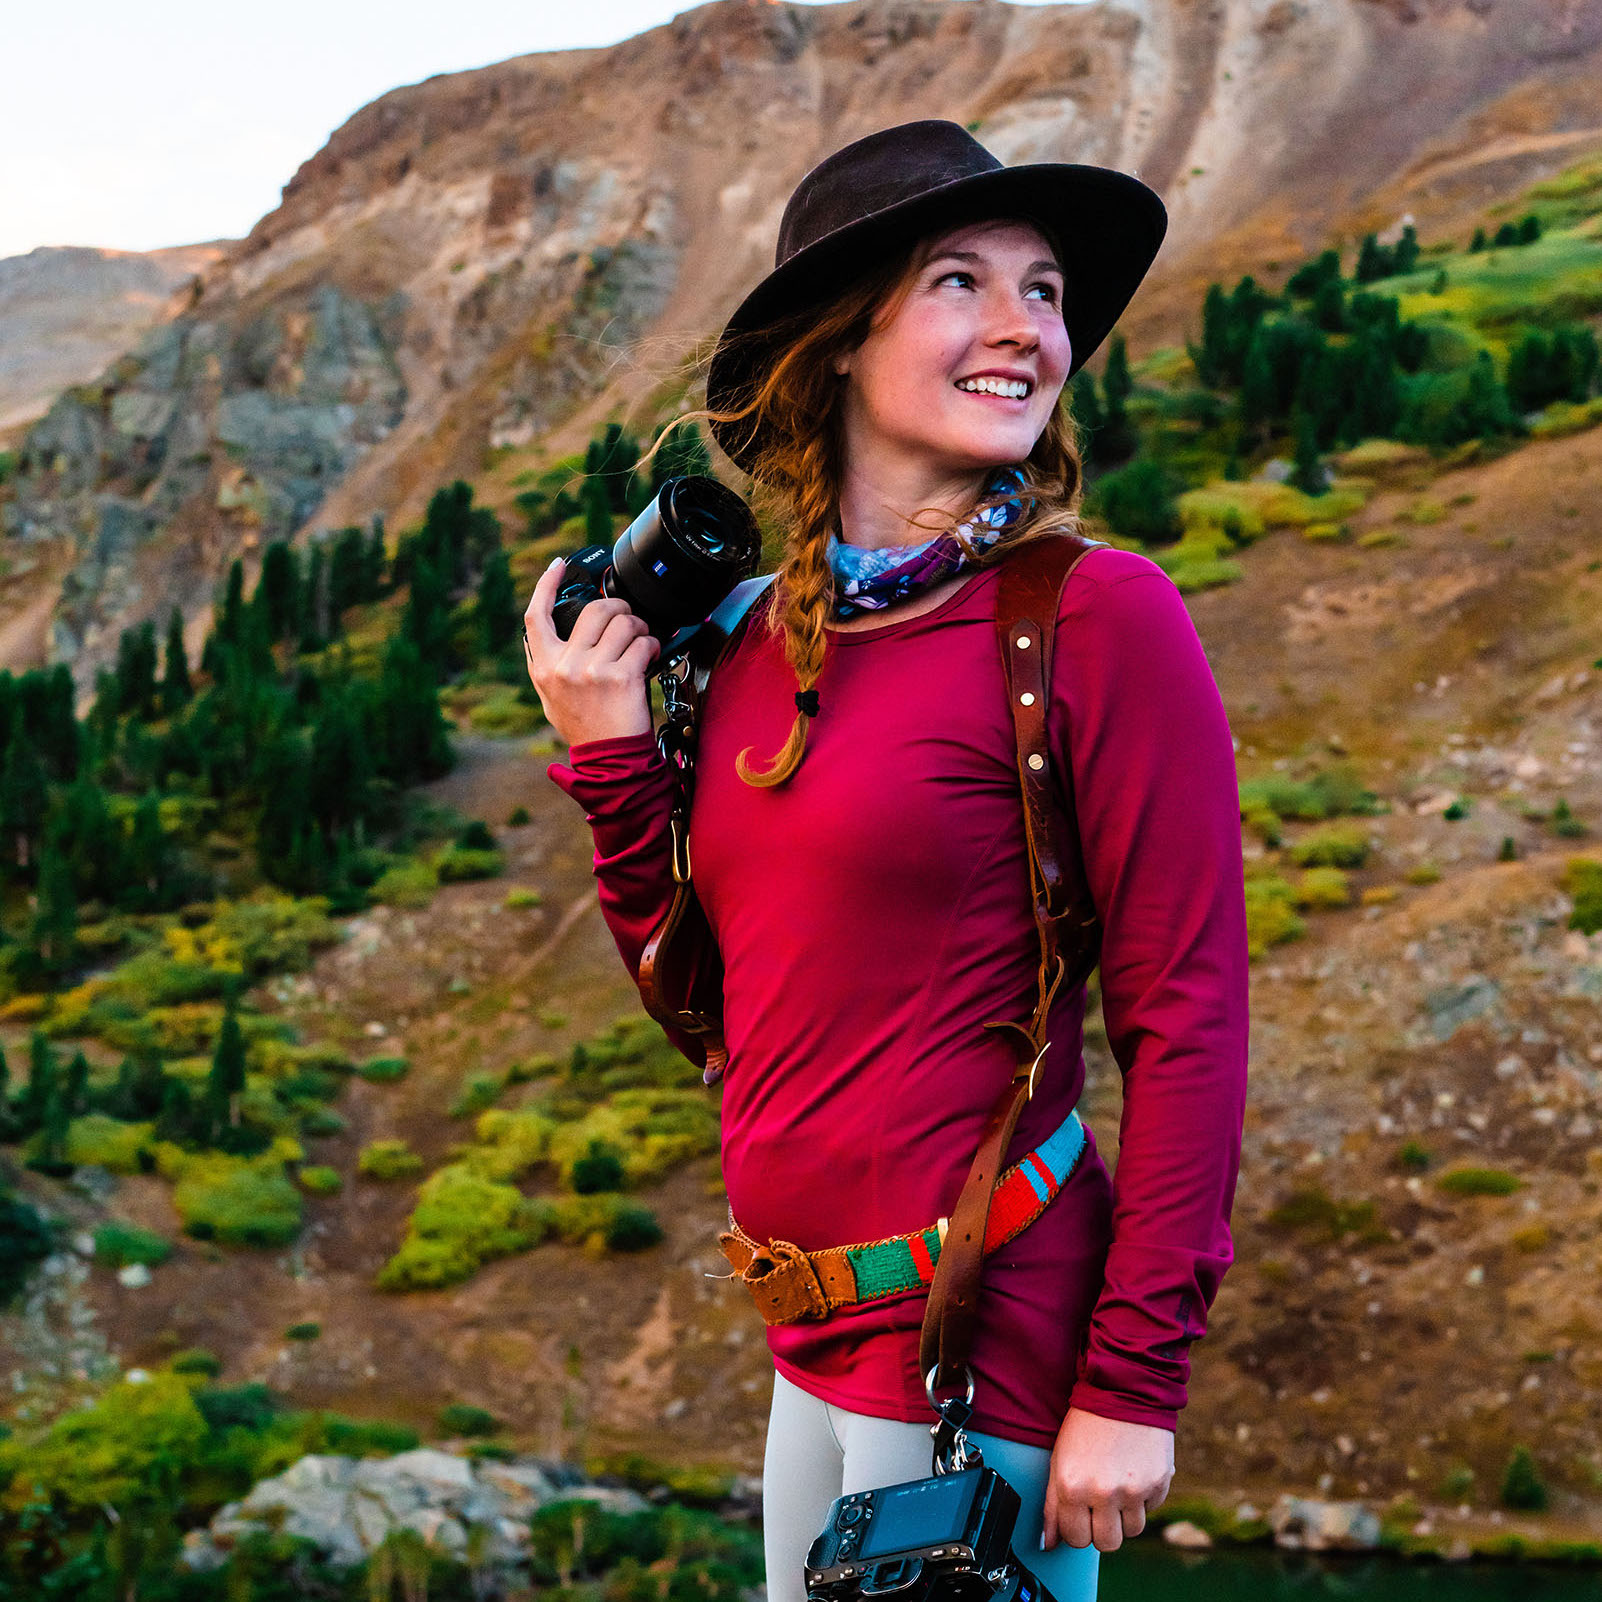 meg holding a camera in the Colorado mountains